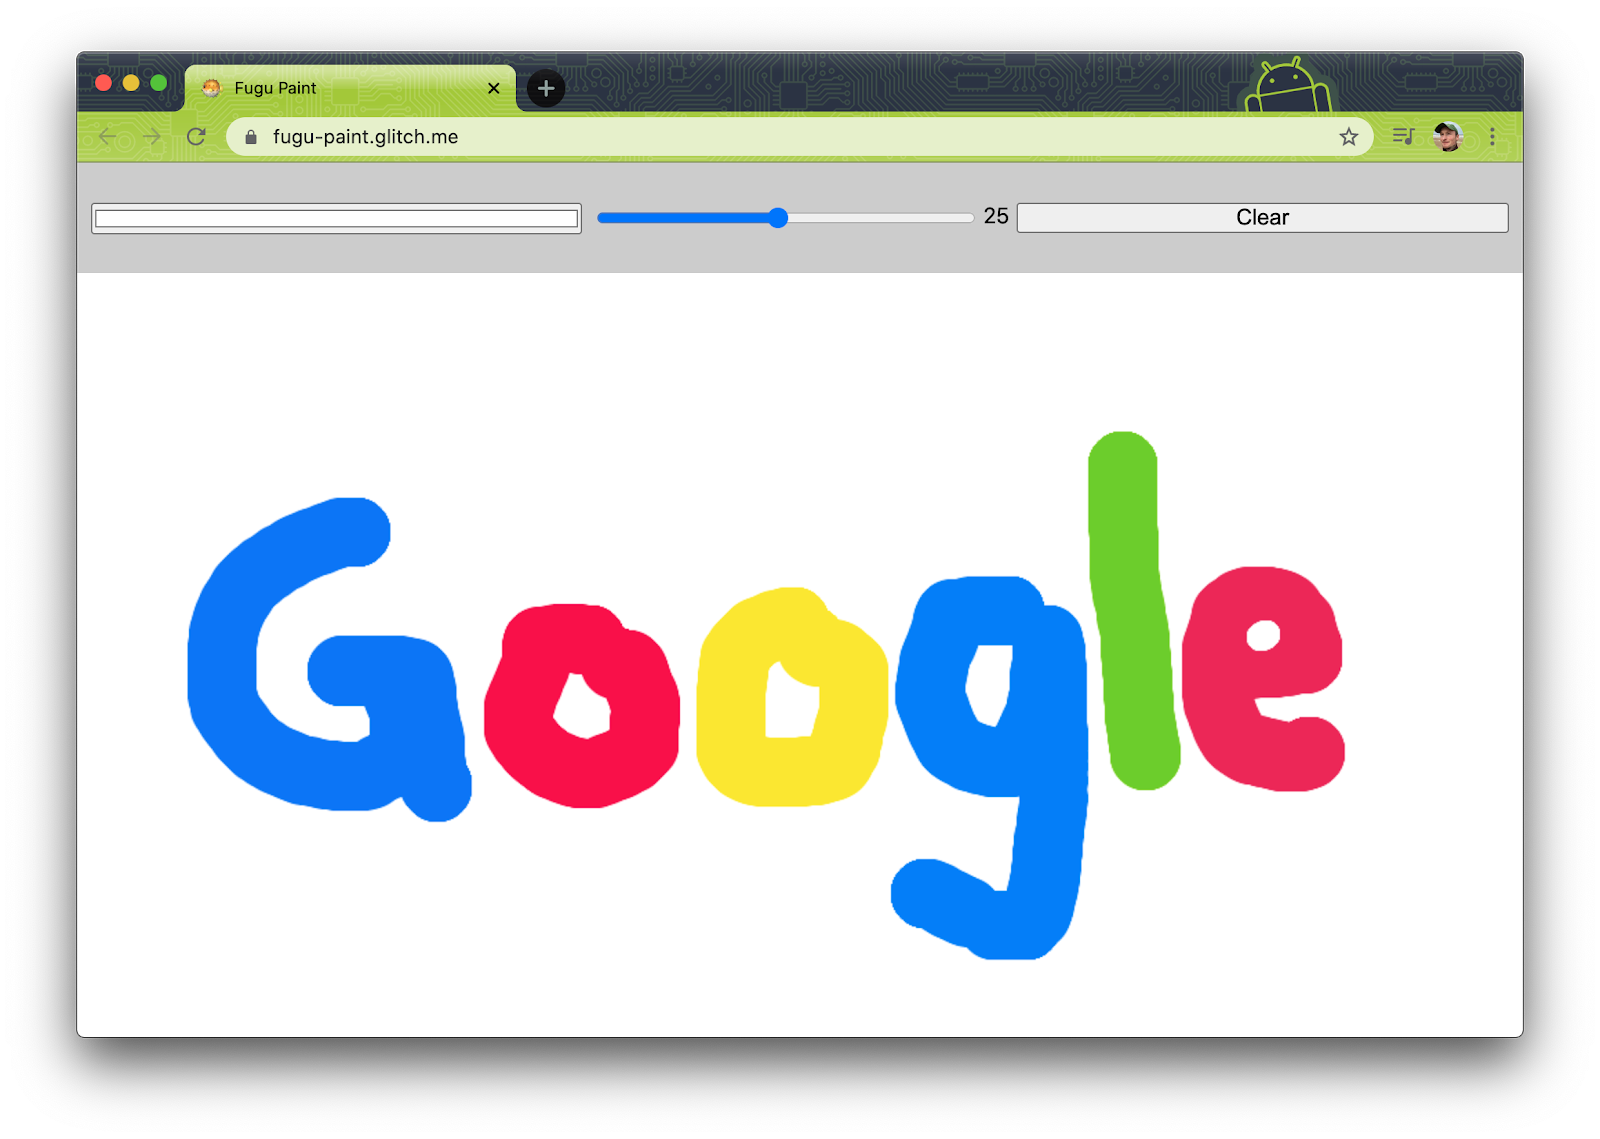 Fugu Greetings ベースラインの PWA。大きなキャンバスに「&ldquo;Google&rd;;」という文字が描かれている。